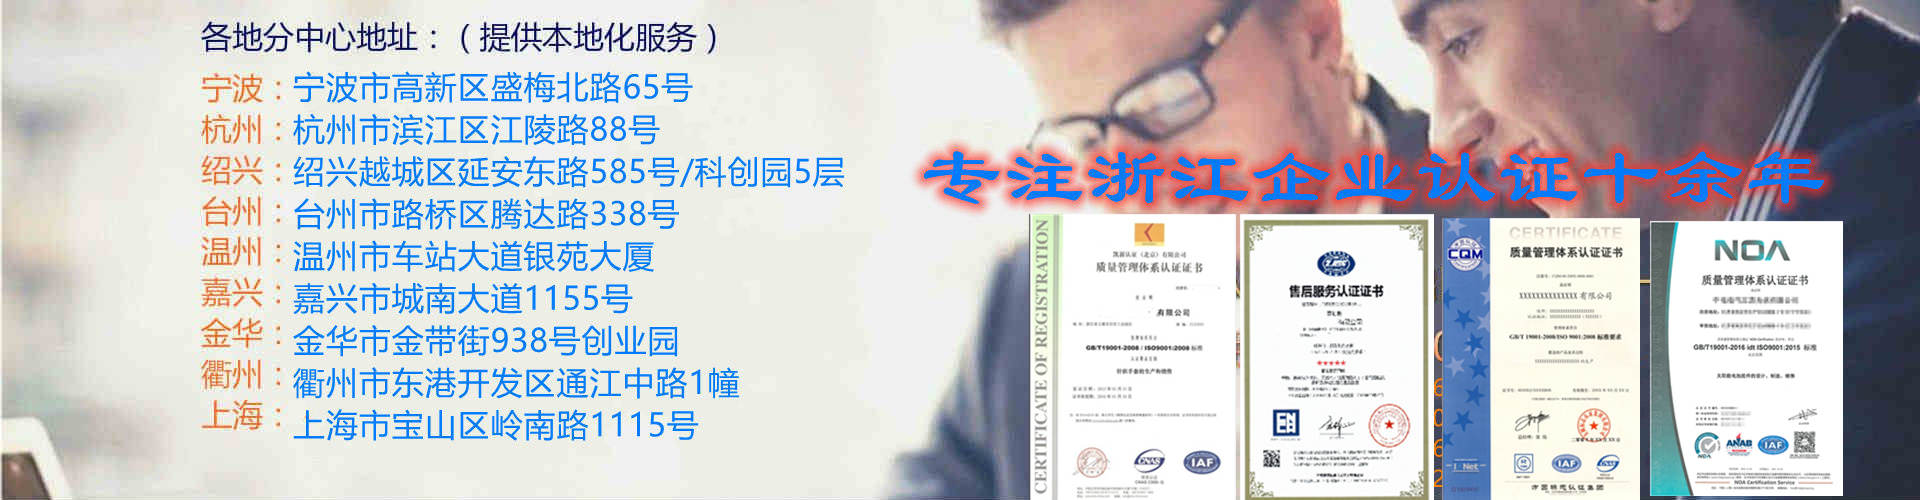 上海ISO14001认证,ISO9000质量体系认证公司 办理流程